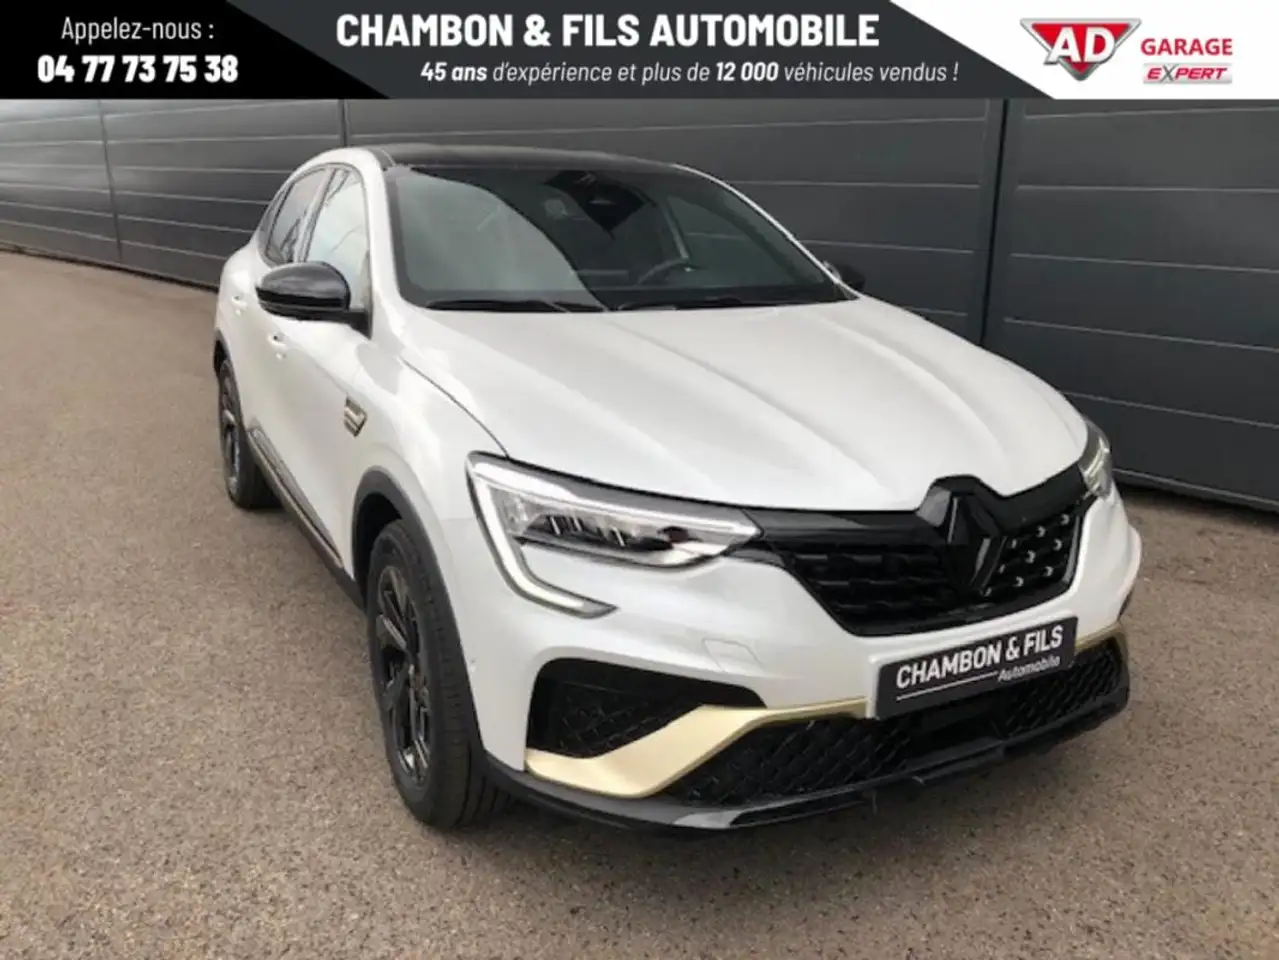 Renault Arkana Coupé in Wit tweedehands in la grand croix voor € 32.990,-